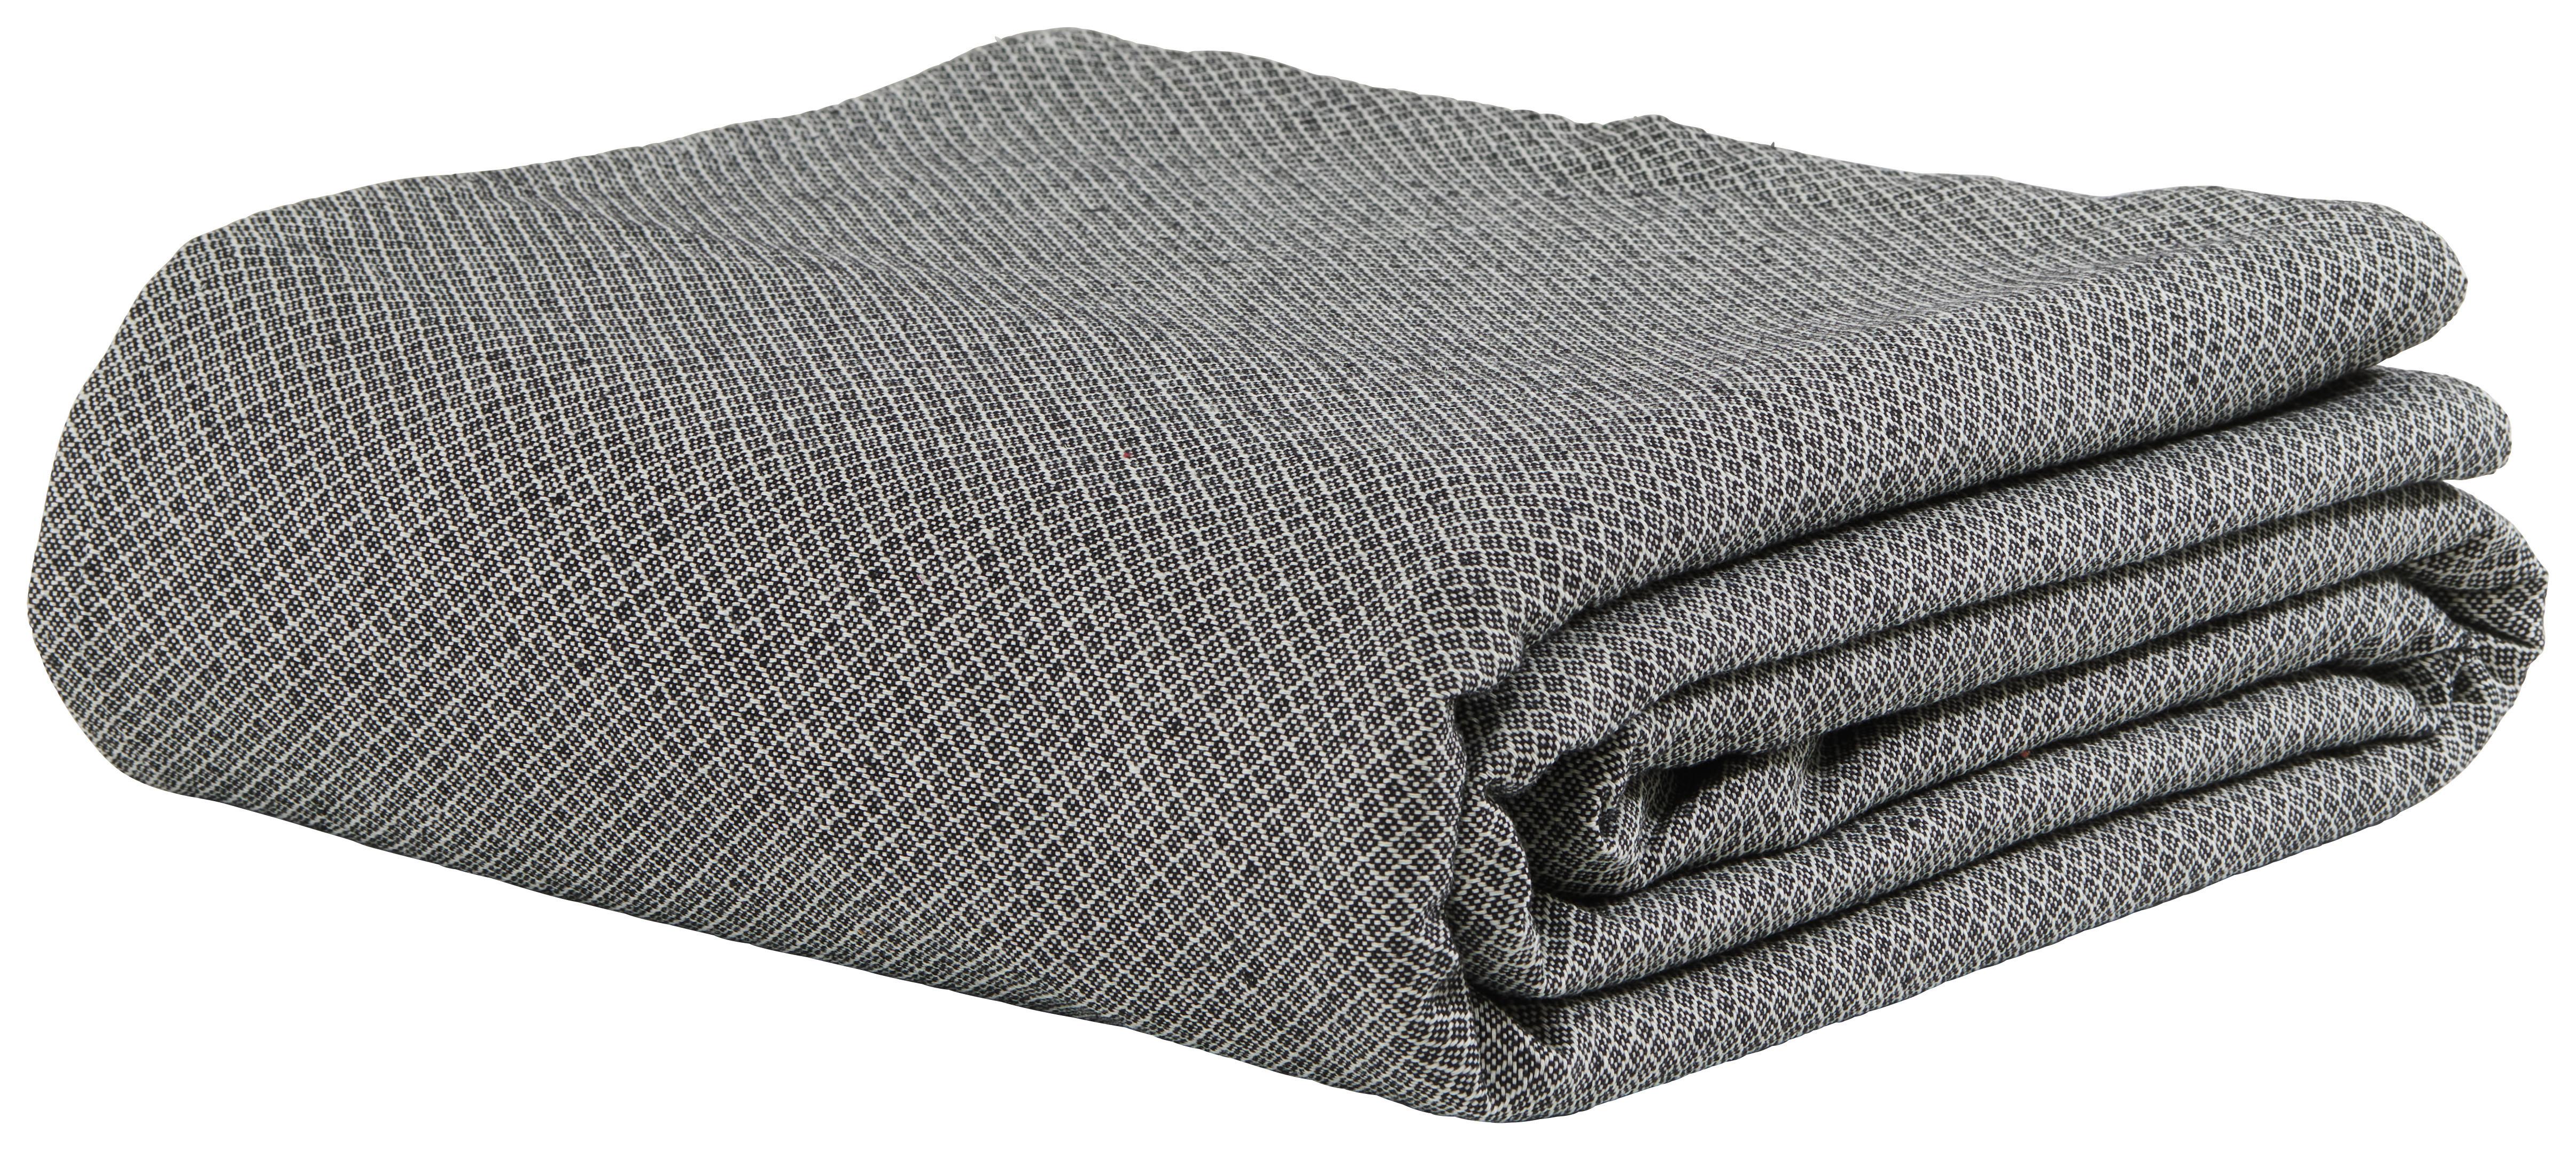 Ágytakaró Dobby Uni - Fehér/Fekete, Textil (140/210cm) - Premium Living